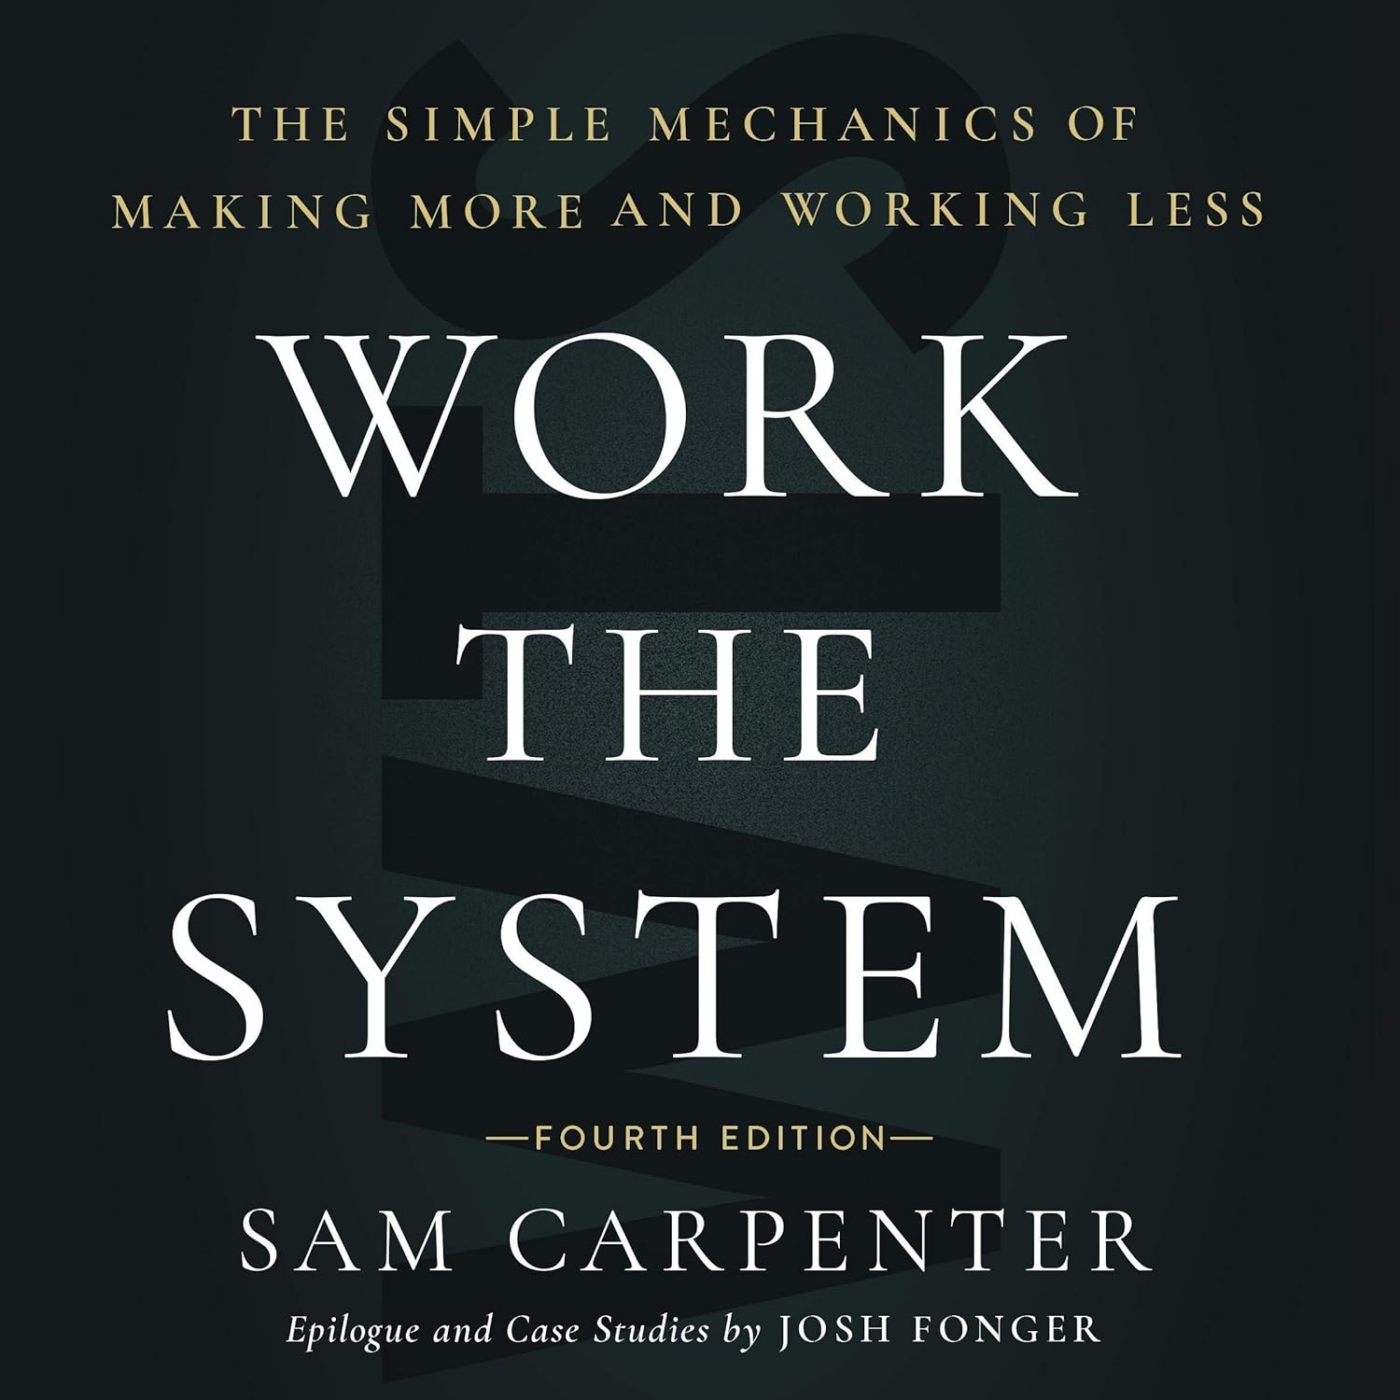 Trabalhe o sistema, de Sam Carpenter